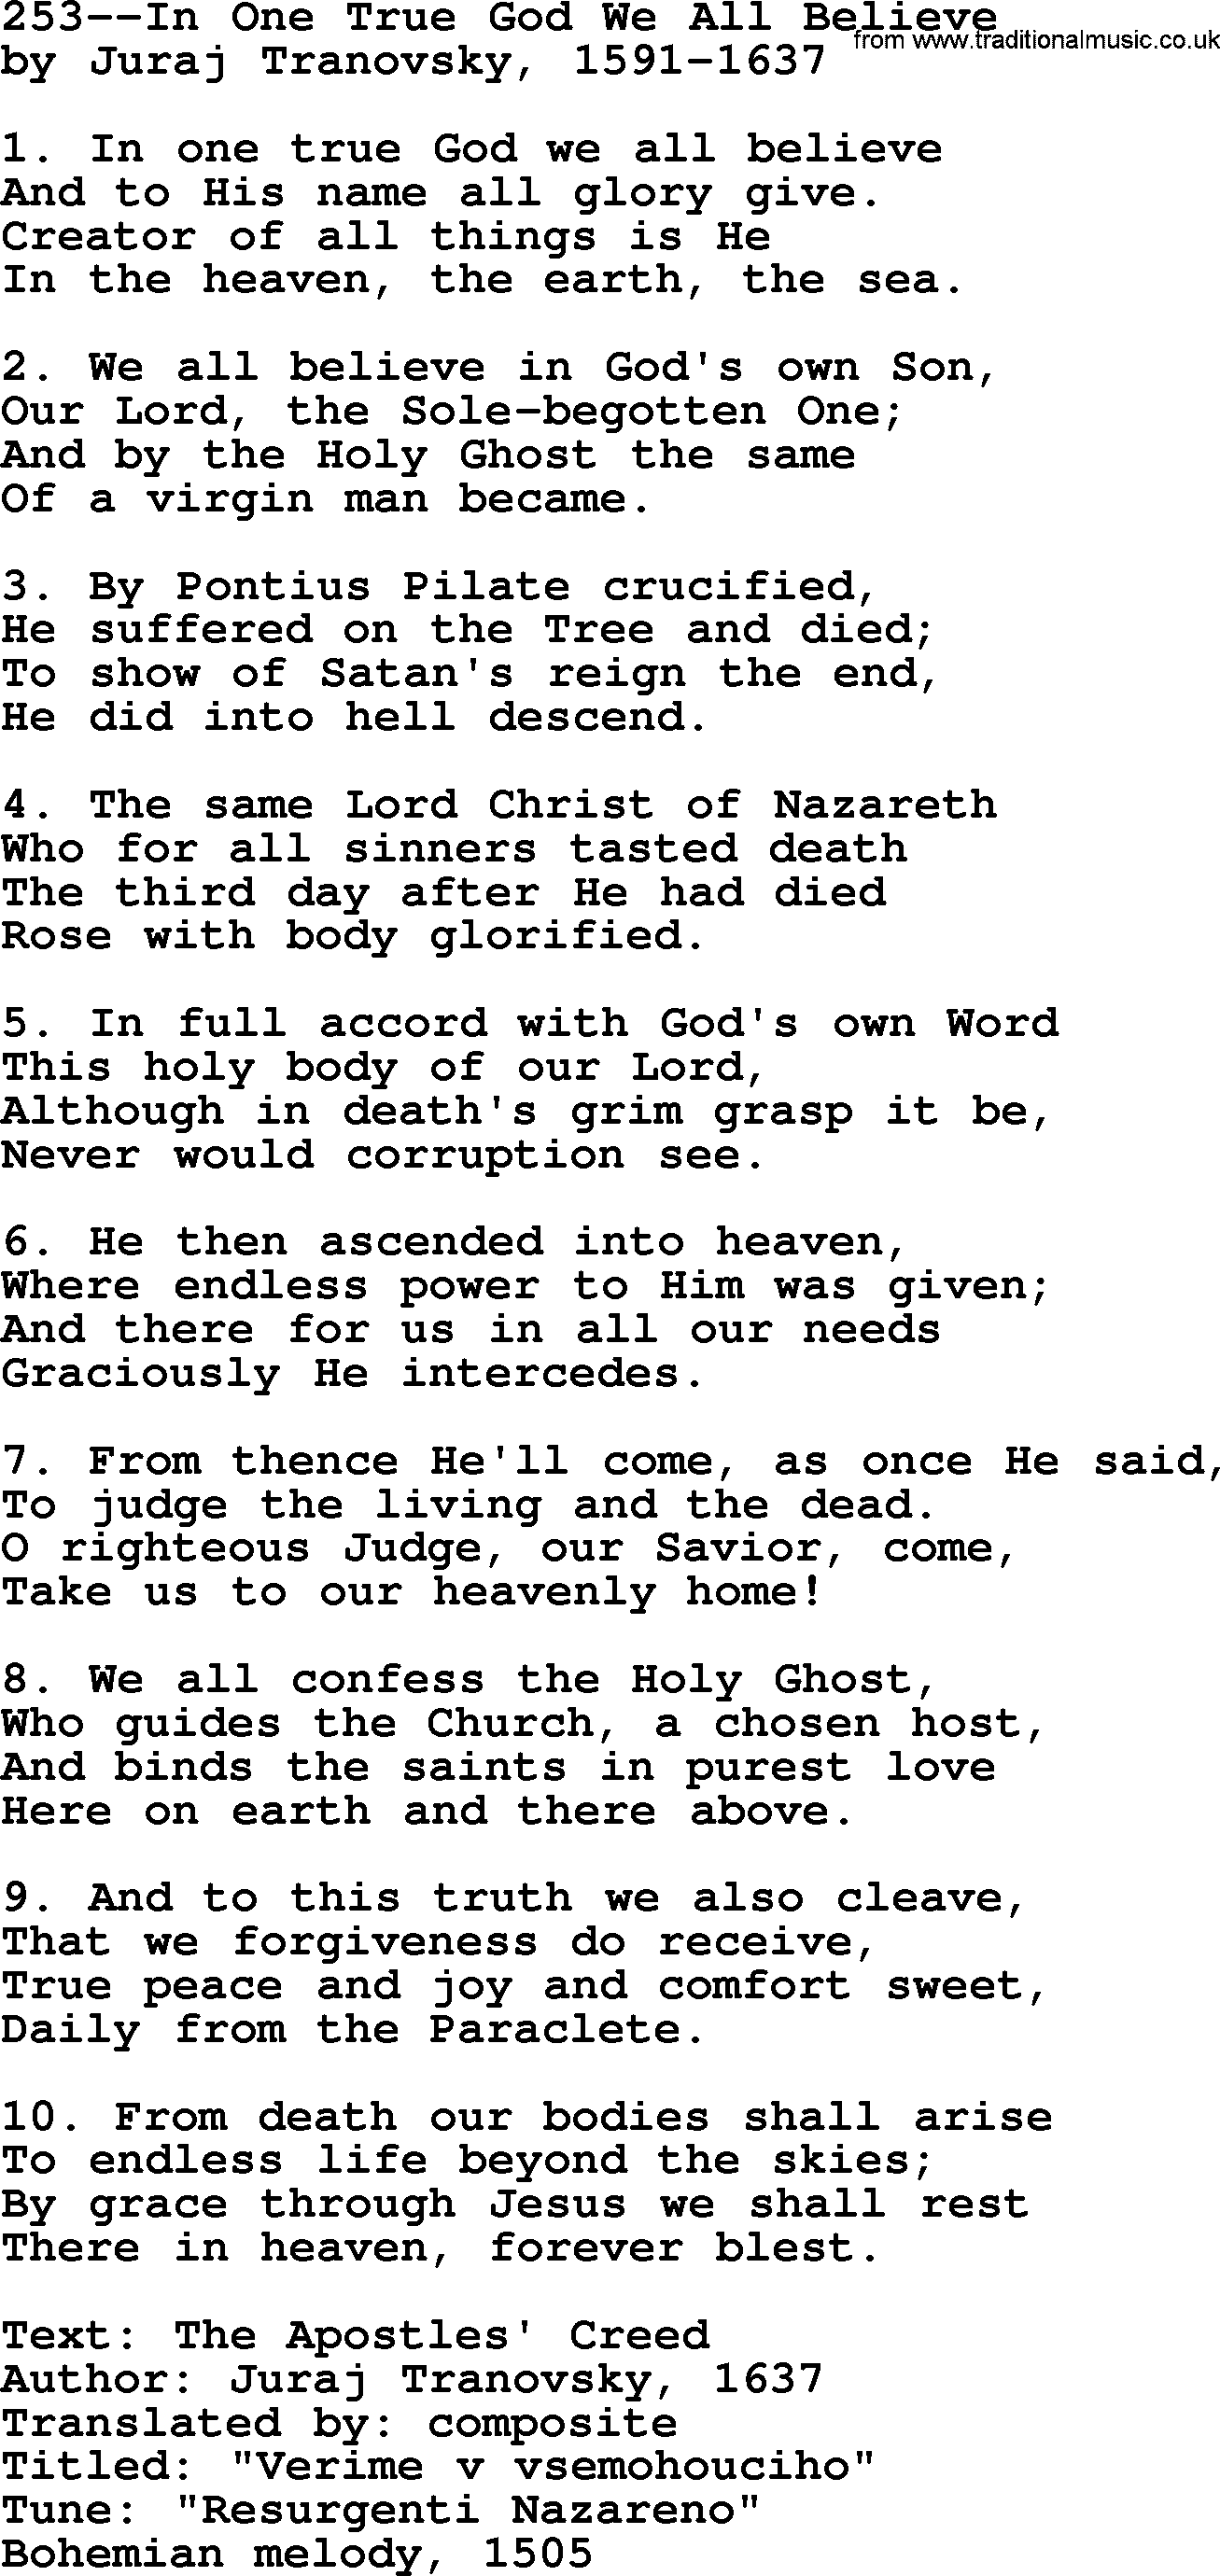 Lutheran Hymn: 253--In One True God We All Believe.txt lyrics with PDF